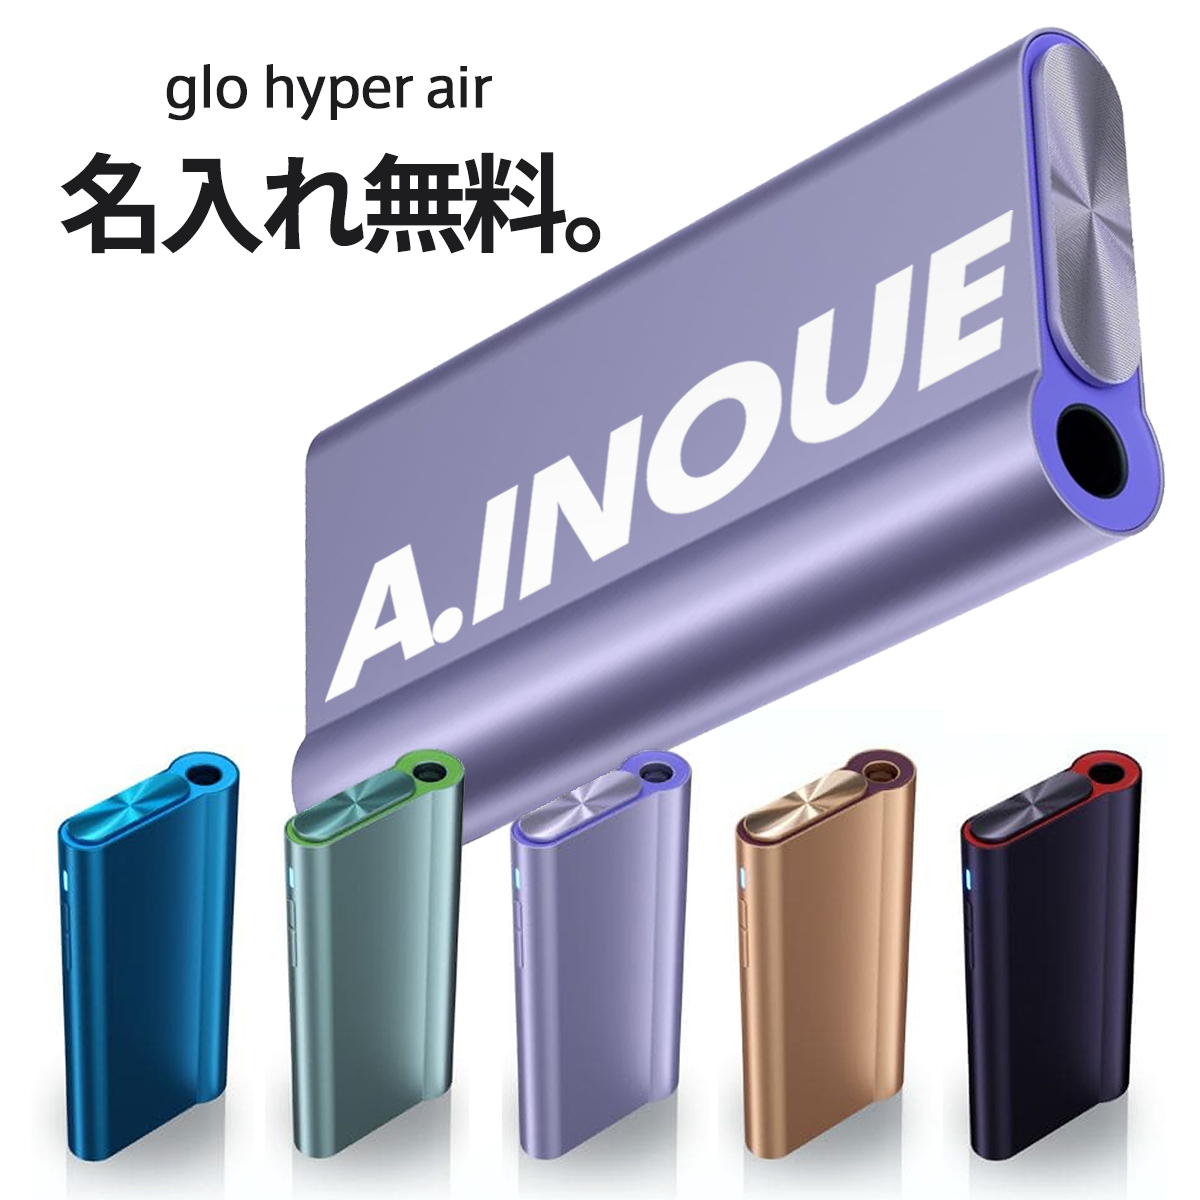 新商品 ポイント15倍 グロー ハイパー エア glo hyper air クリスプパープル 加熱式タバコ 本体 たばこ デバイス スターターキット 送料込み